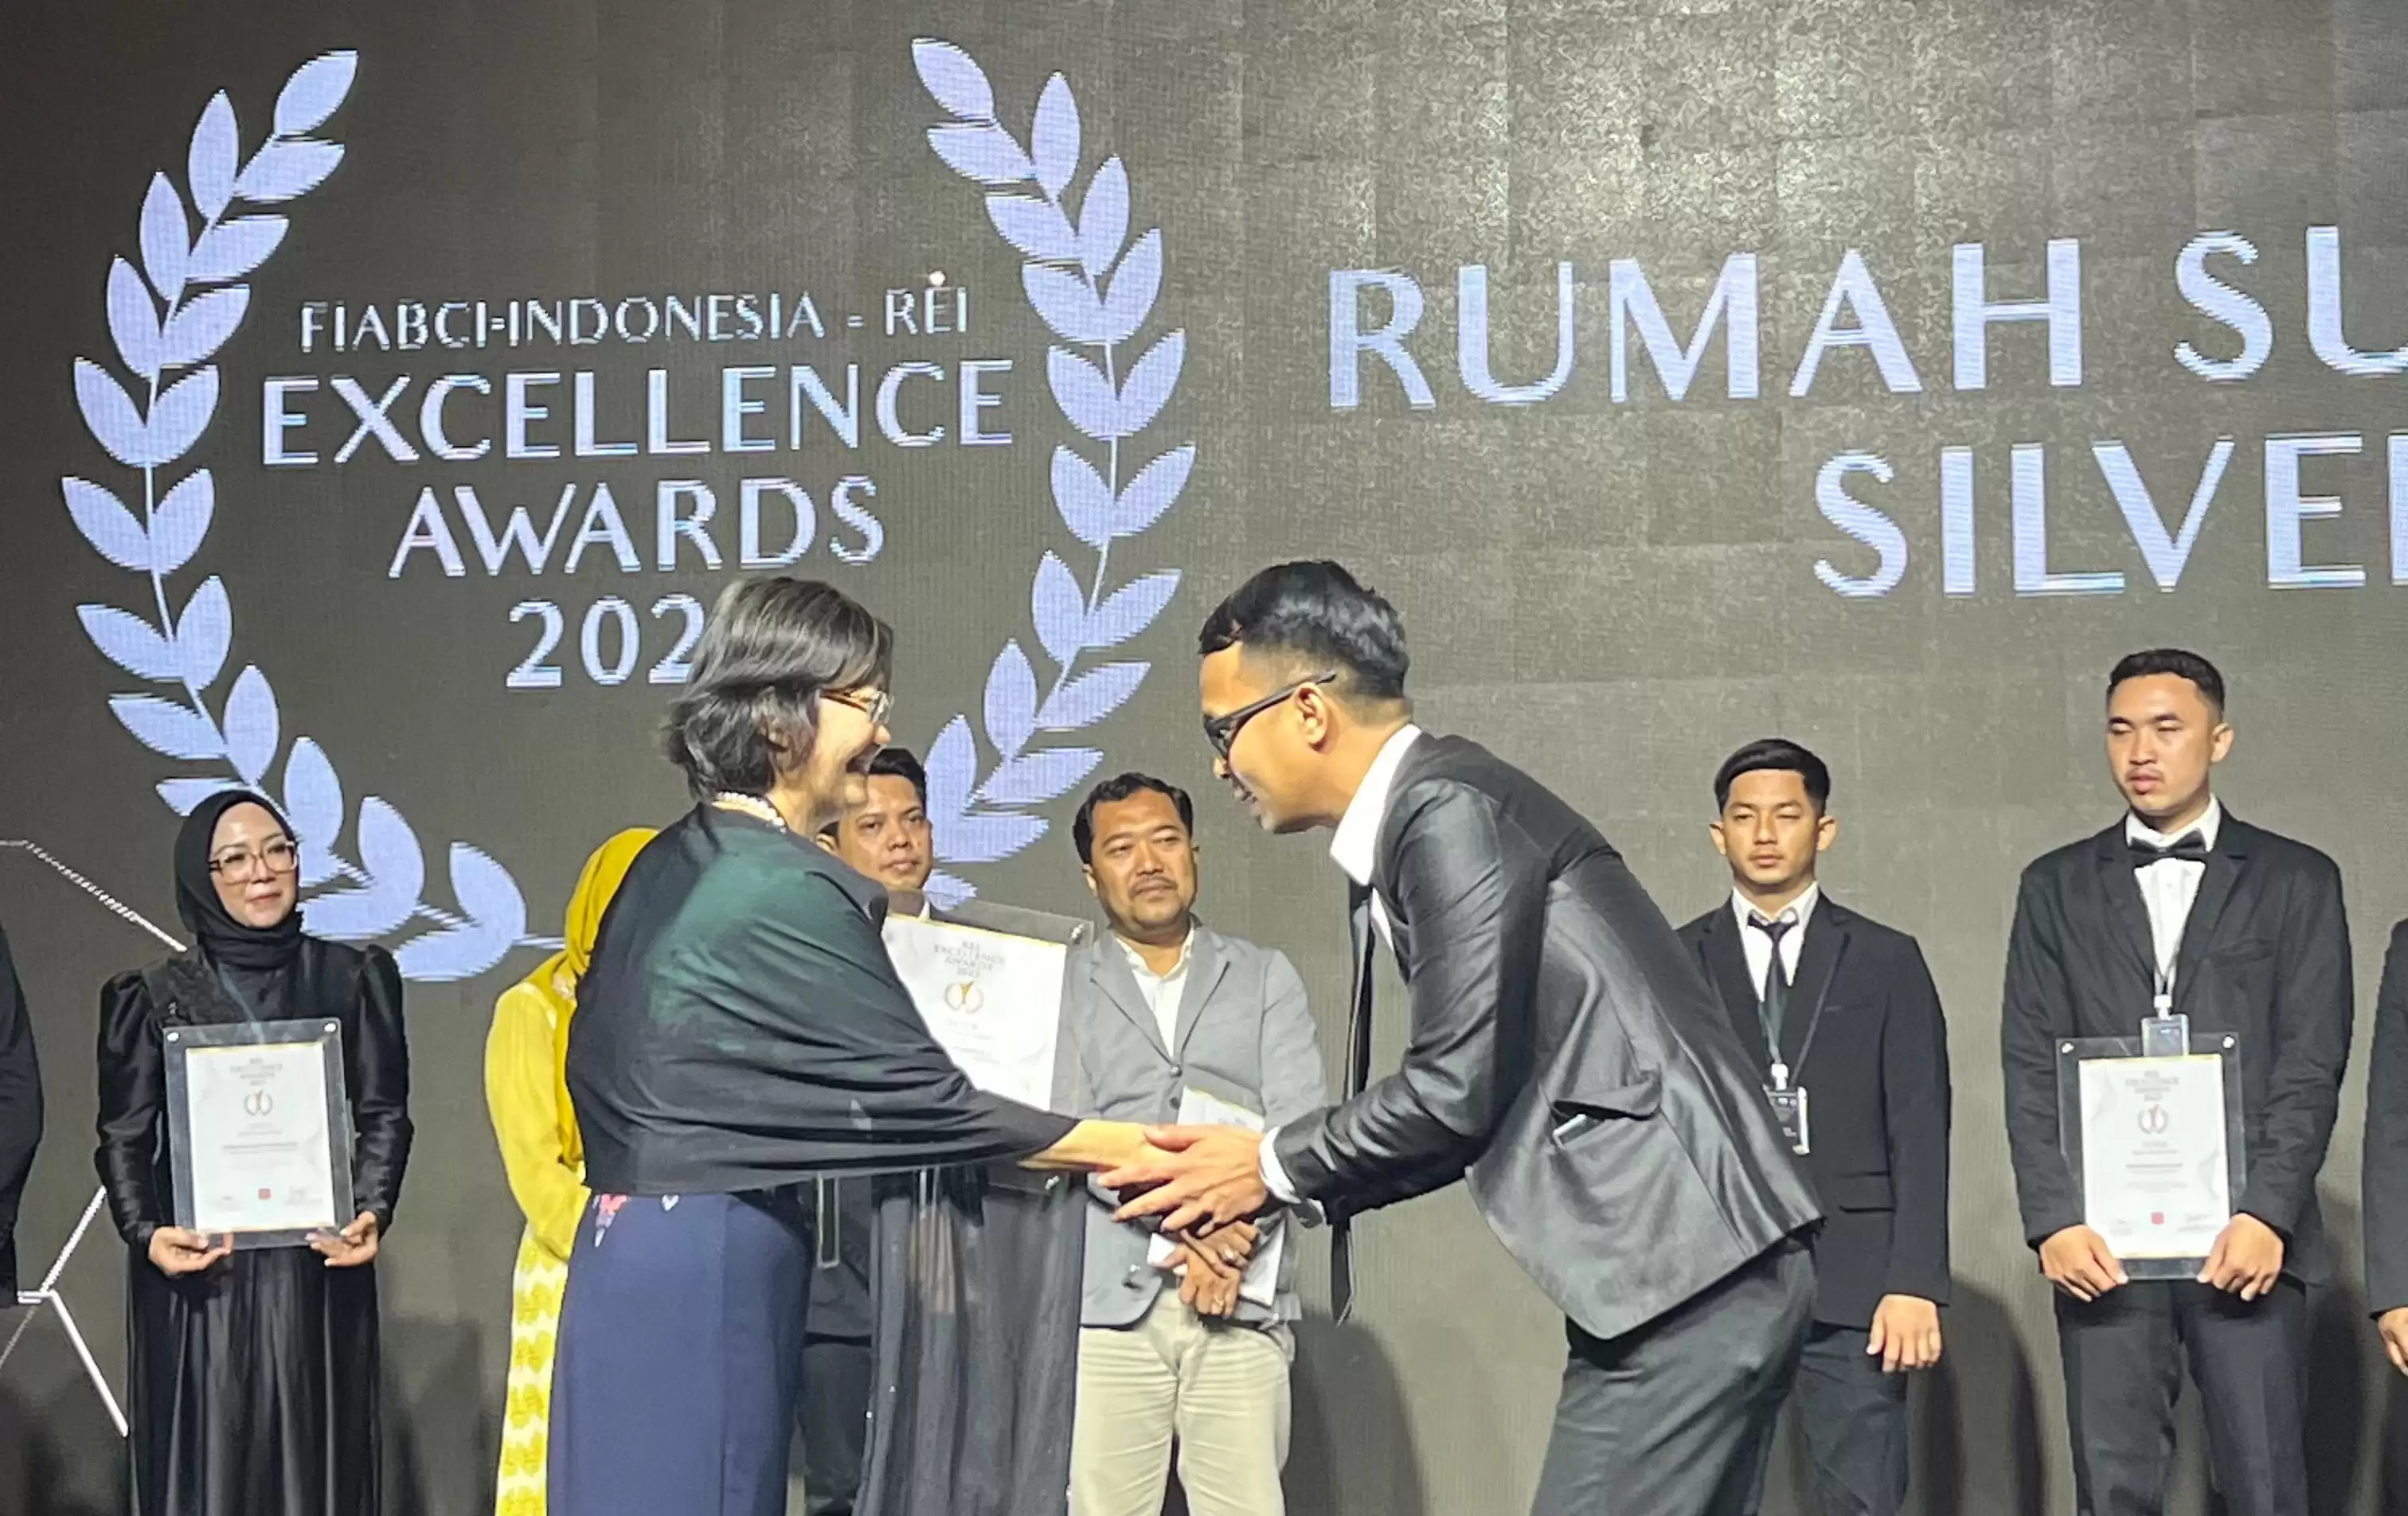 Djavino Recidence V ditetapkan sebagai pemenang Silver Winner dengan kategori rumah subsidi terbaik se-Indonesia (Foto: Dok MI)